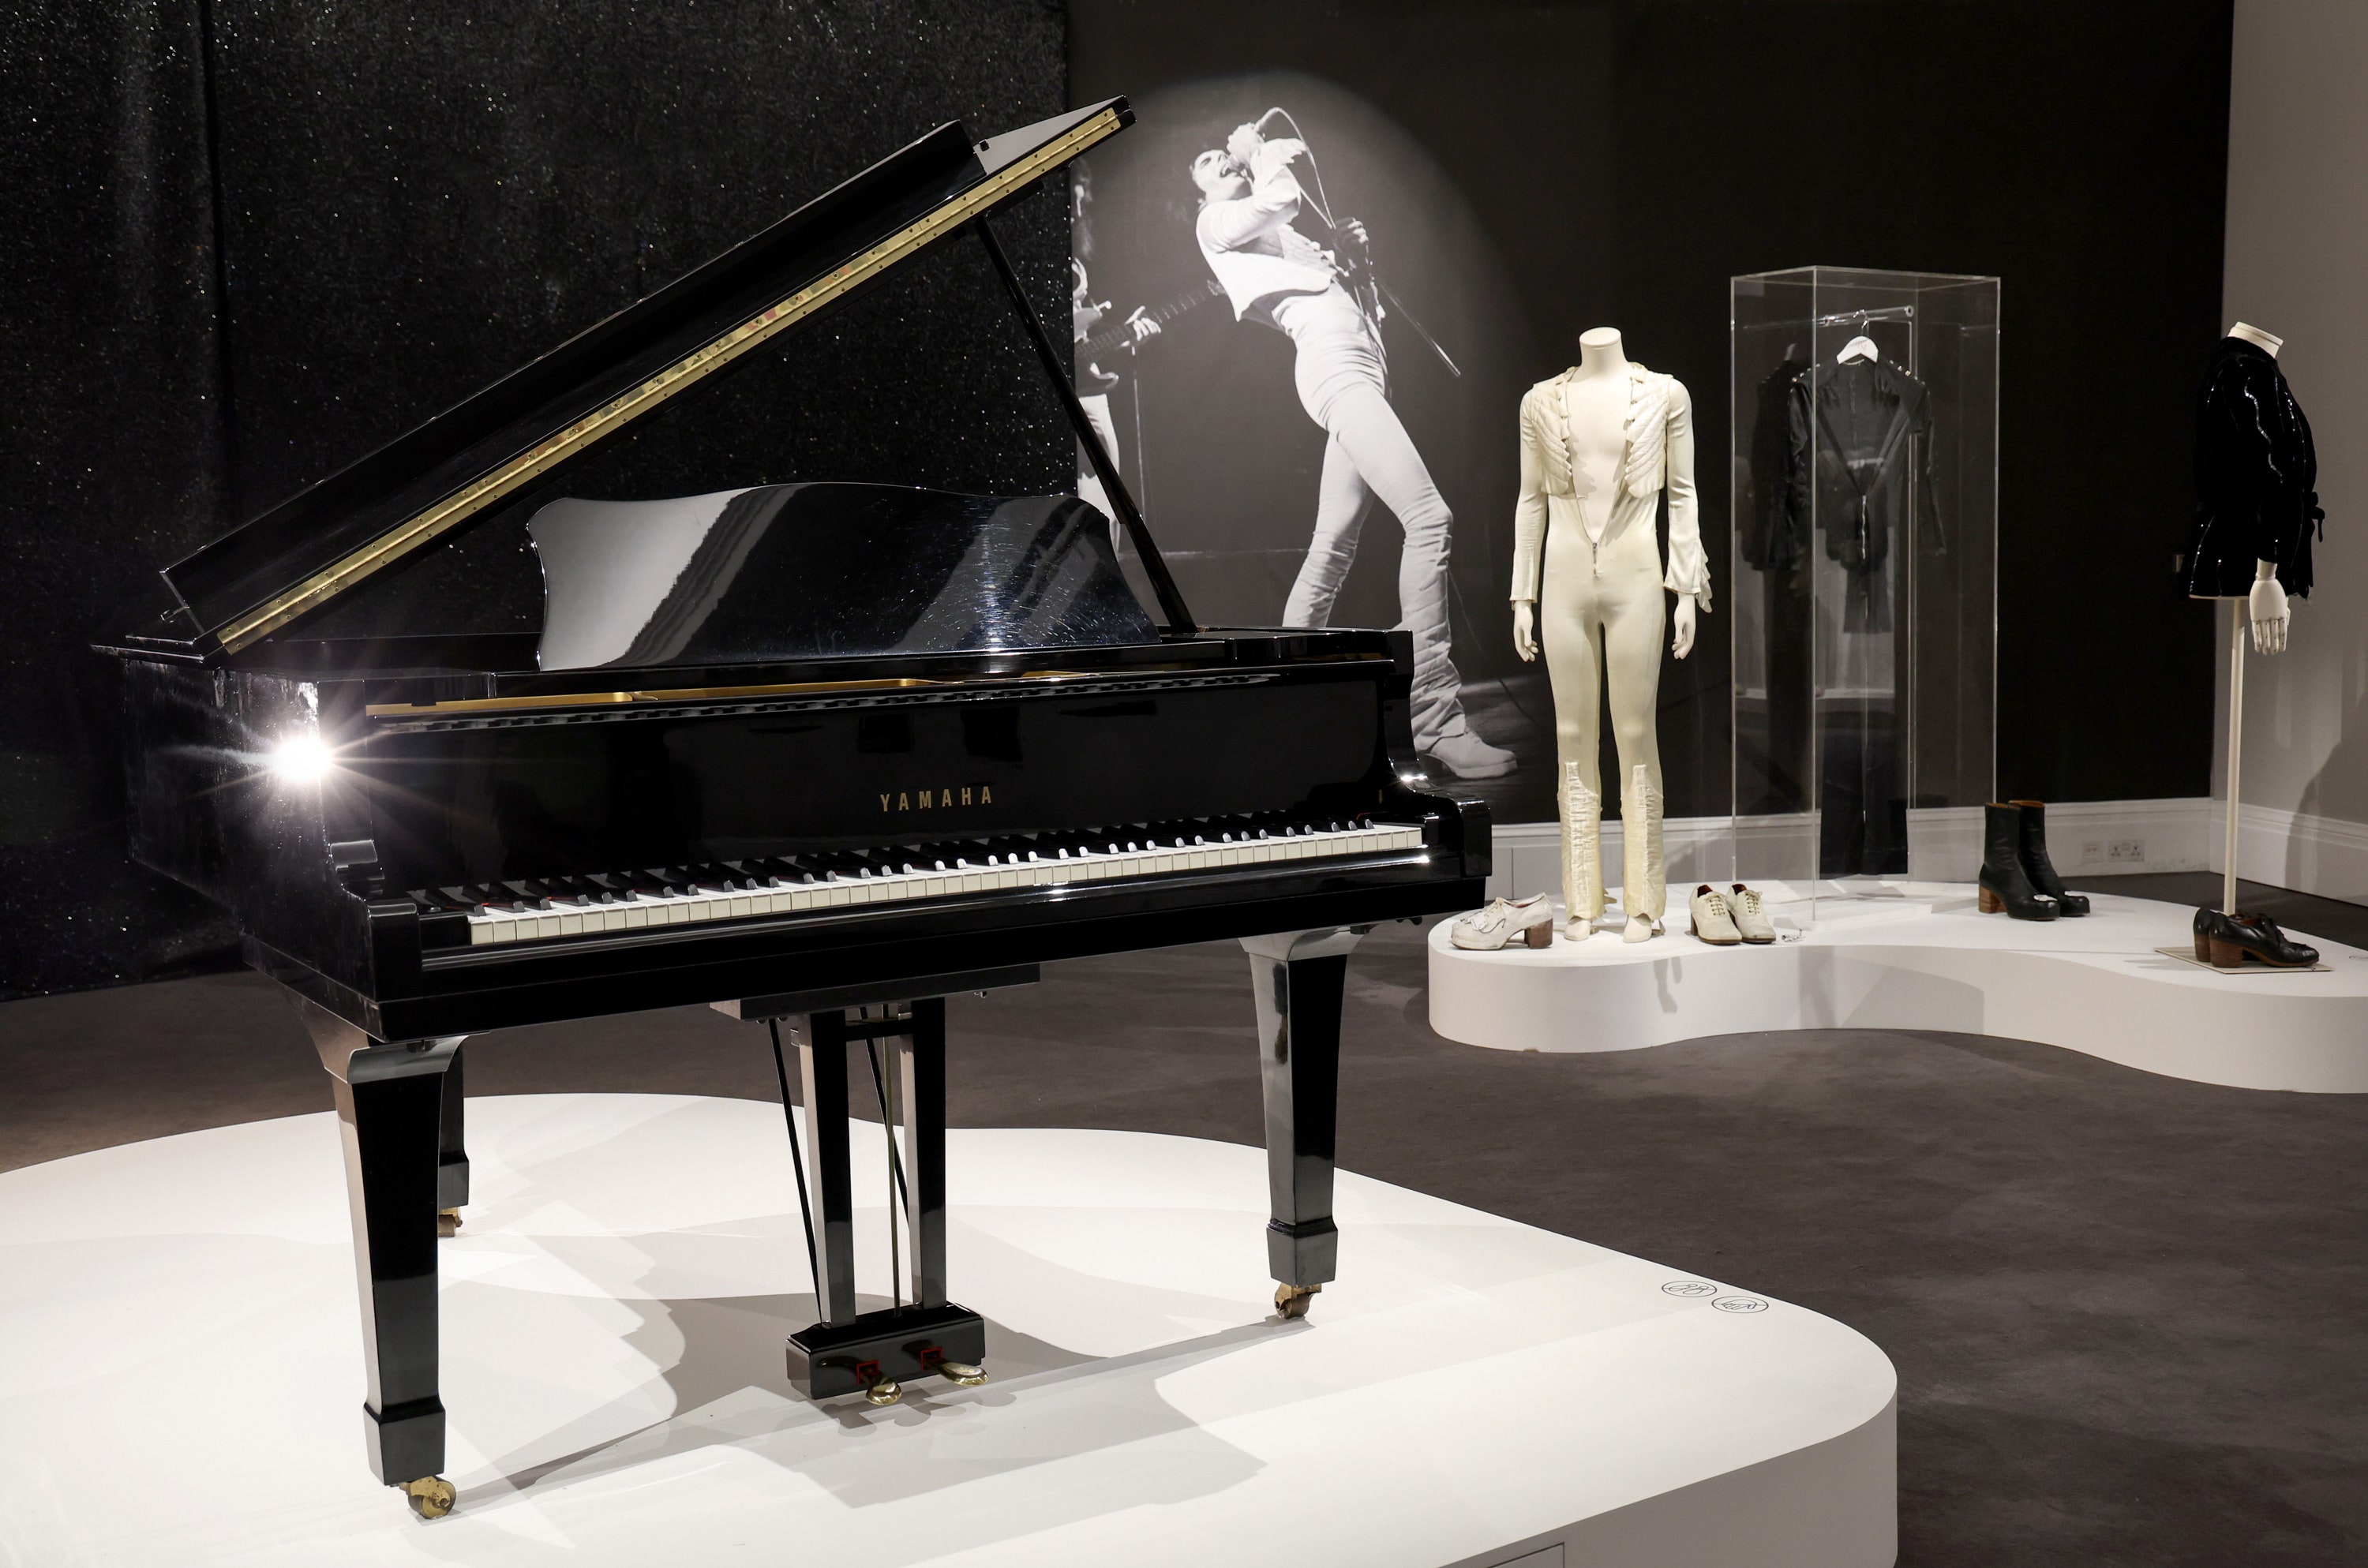 alicia keys, taylor swift, lady gaga y otros famosos que han usado pianos de gran diseño